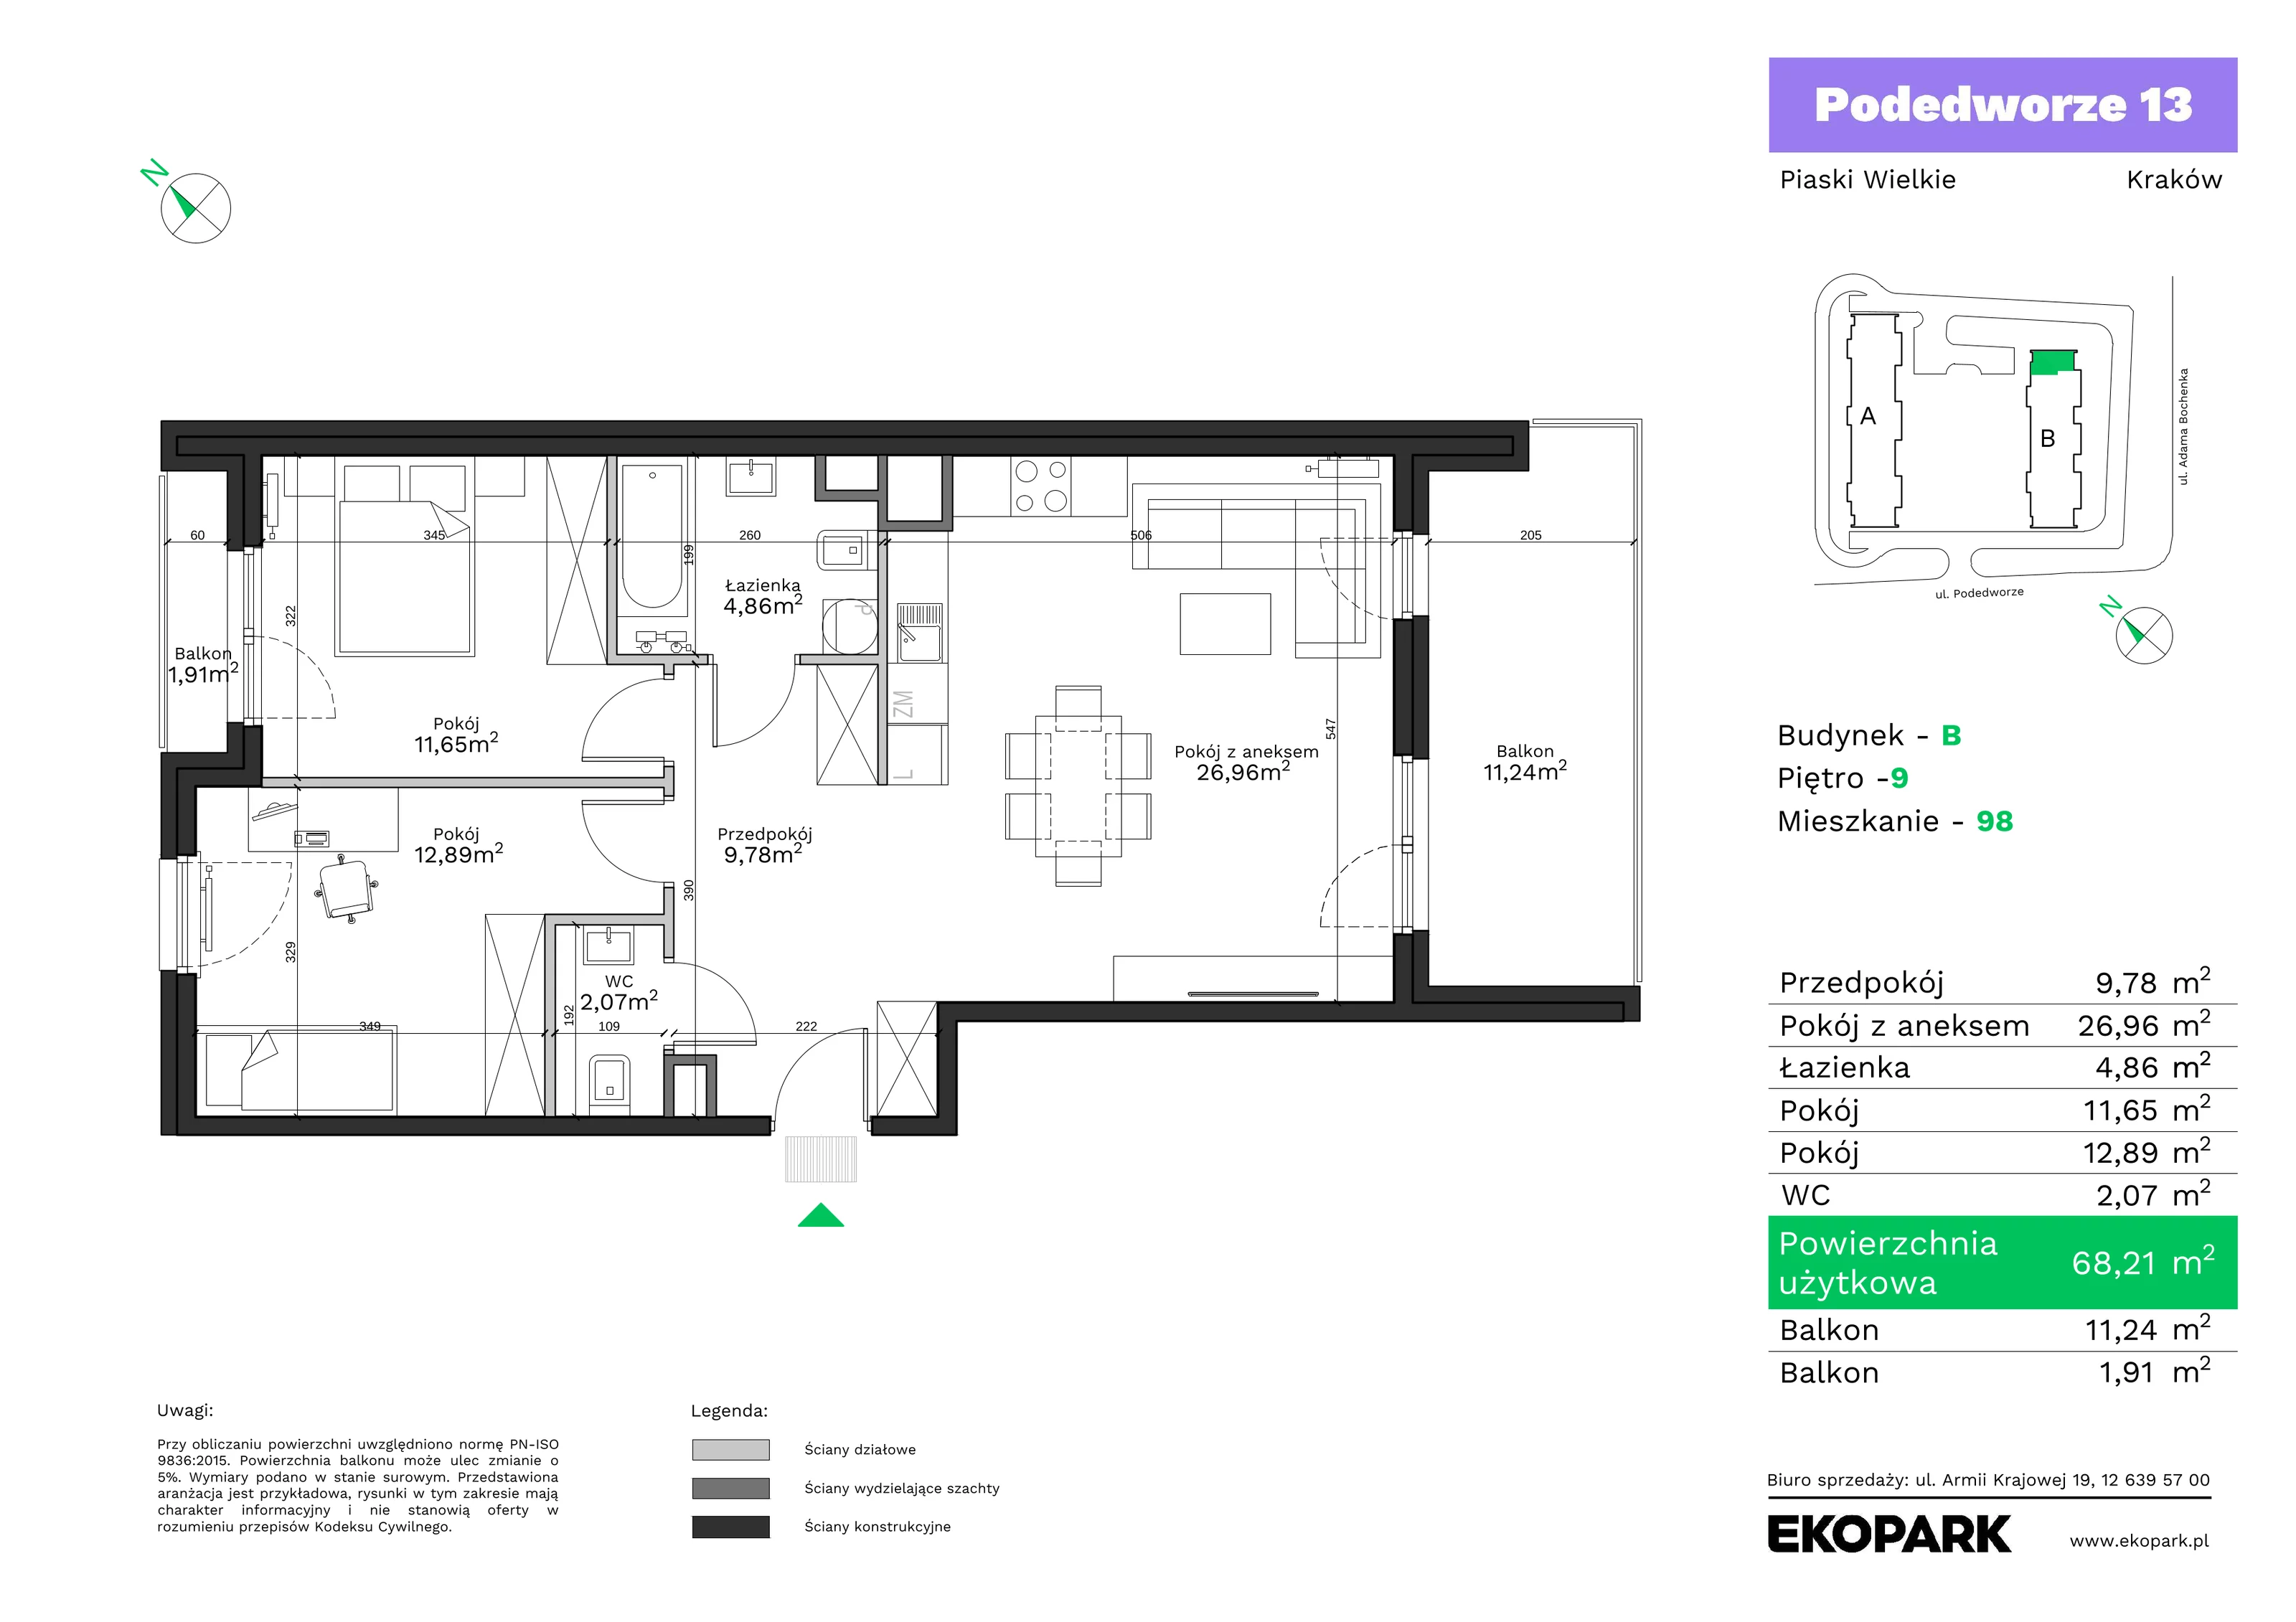 Mieszkanie 68,21 m², piętro 9, oferta nr B98, Podedworze 13, Kraków, Podgórze Duchackie, Piaski Wielkie, ul. Podedworze 13